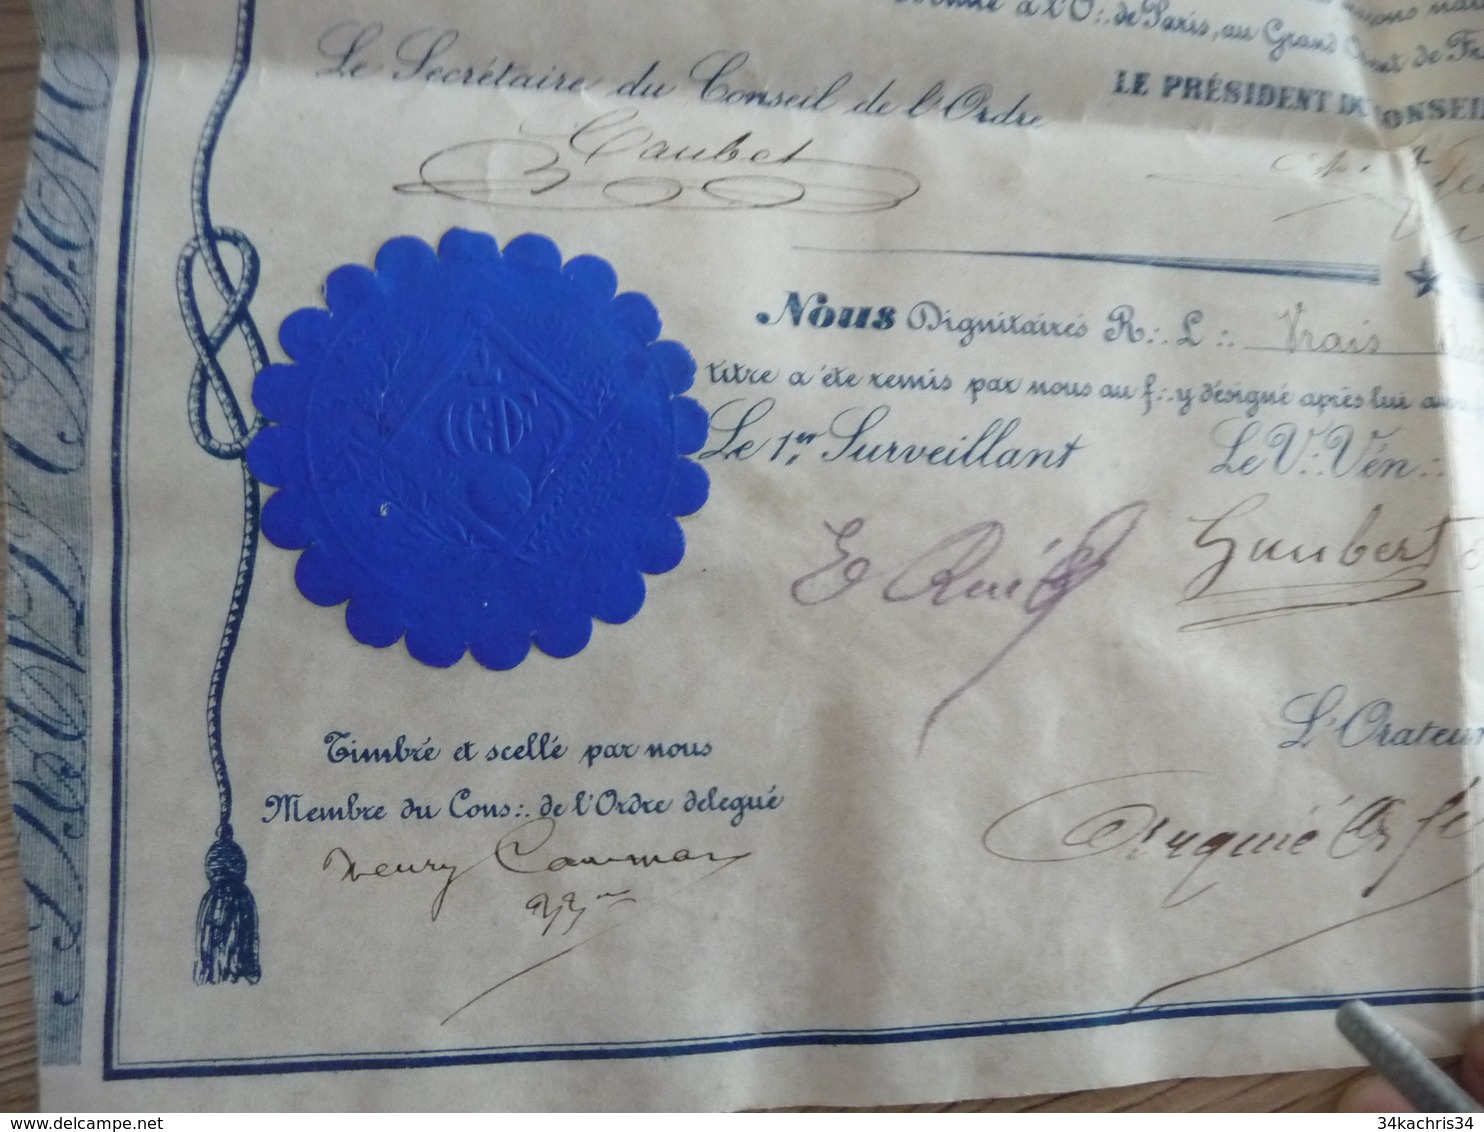 Diplôme parchemin Franc maçonnerie 19/10/1876 Toulouse Callayrac Sceau et autographe à voir plis d'archivage sinon TBE